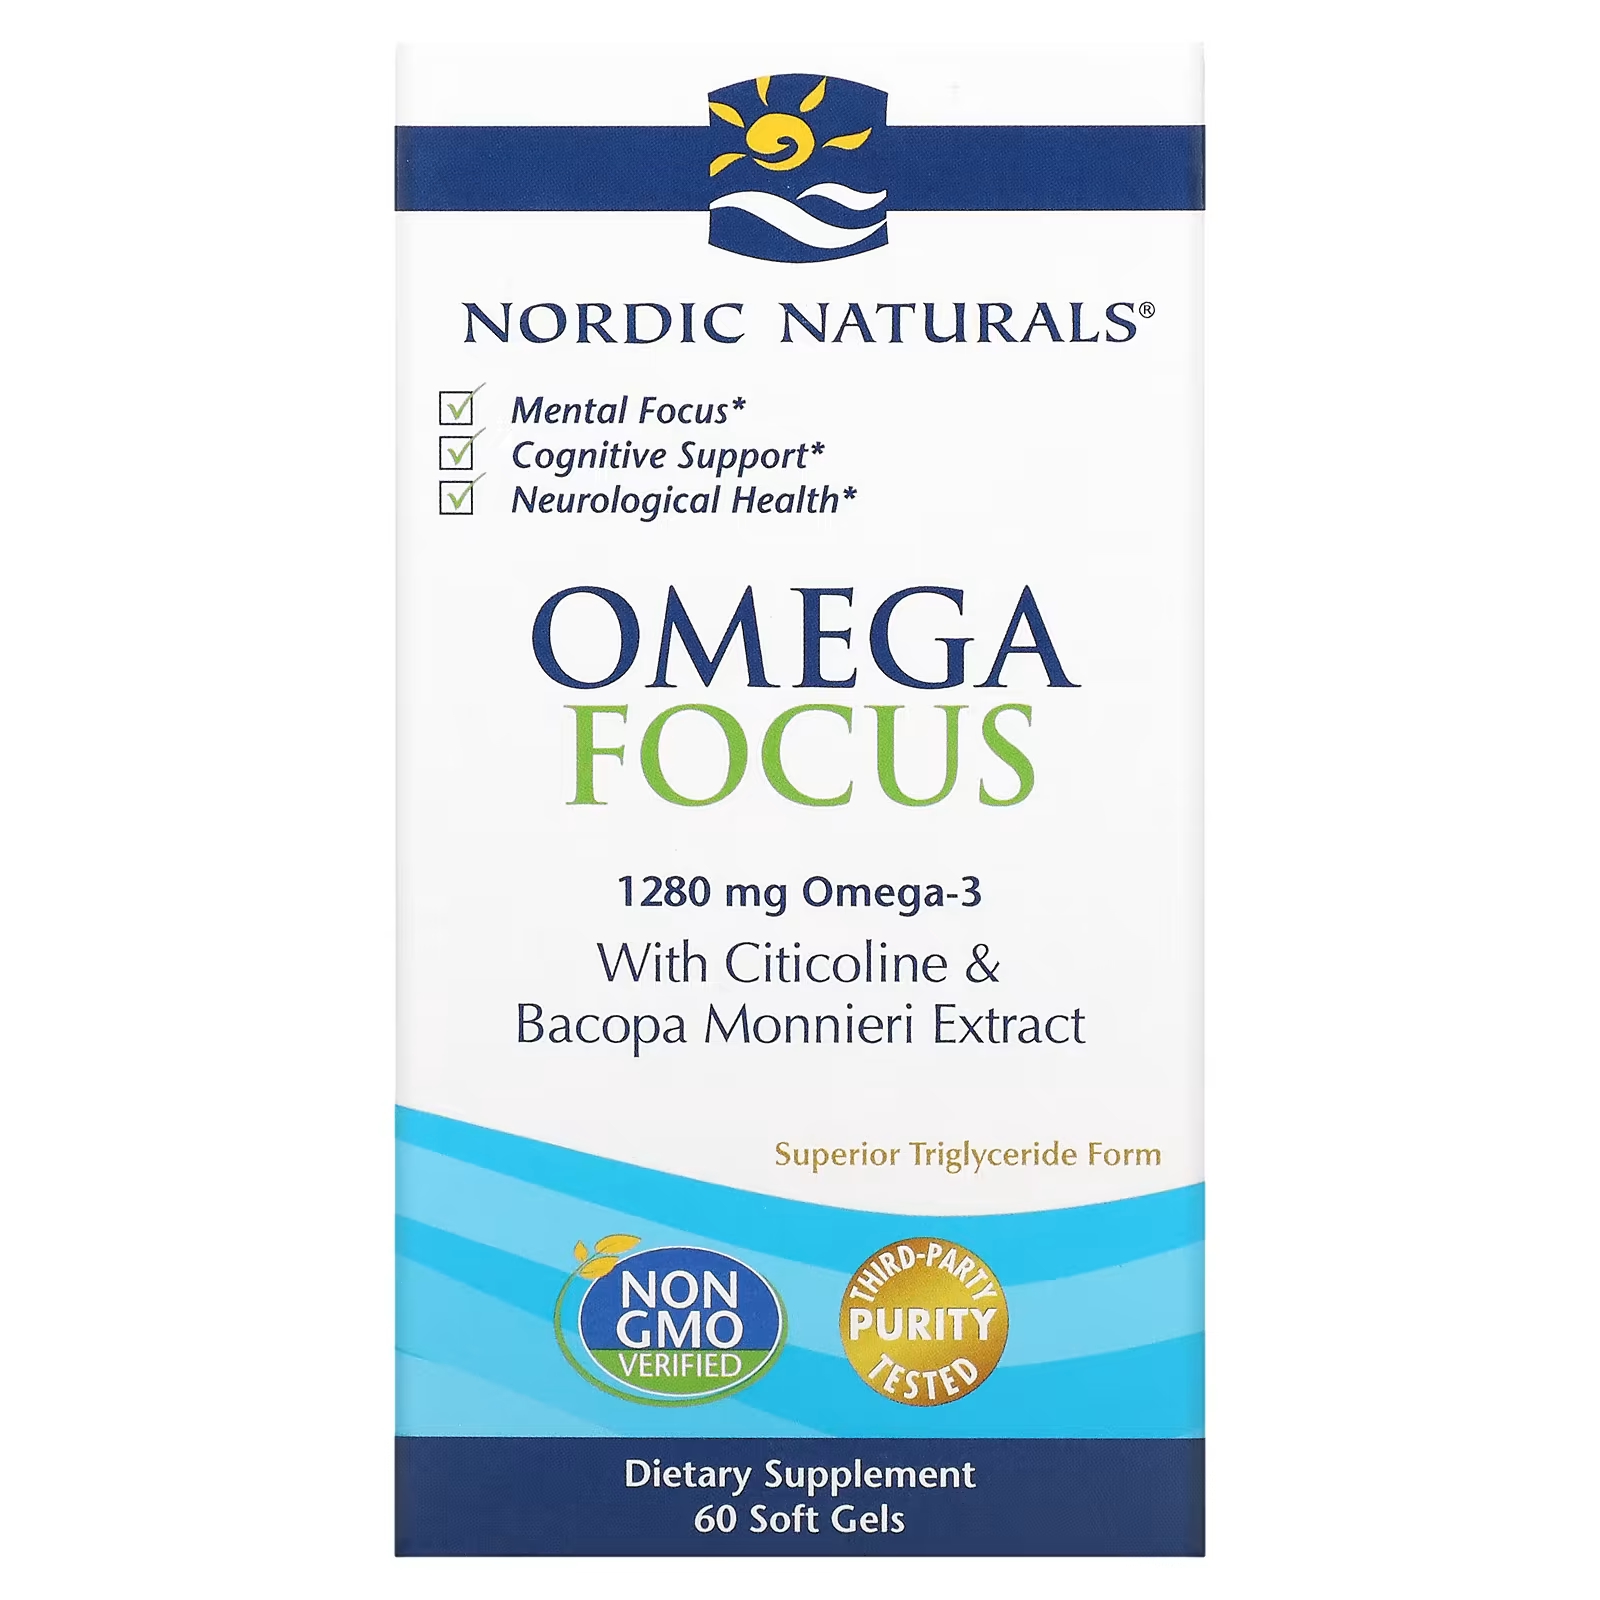 Nordic Naturals Omega Focus 1280 мг, 60 мягких таблеток (640 мг на мягкую гель) nordic naturals ultimate omega lemon 1280 мг 60 мягких капсул из рыбного желатина 640 мг в мягкой капсуле